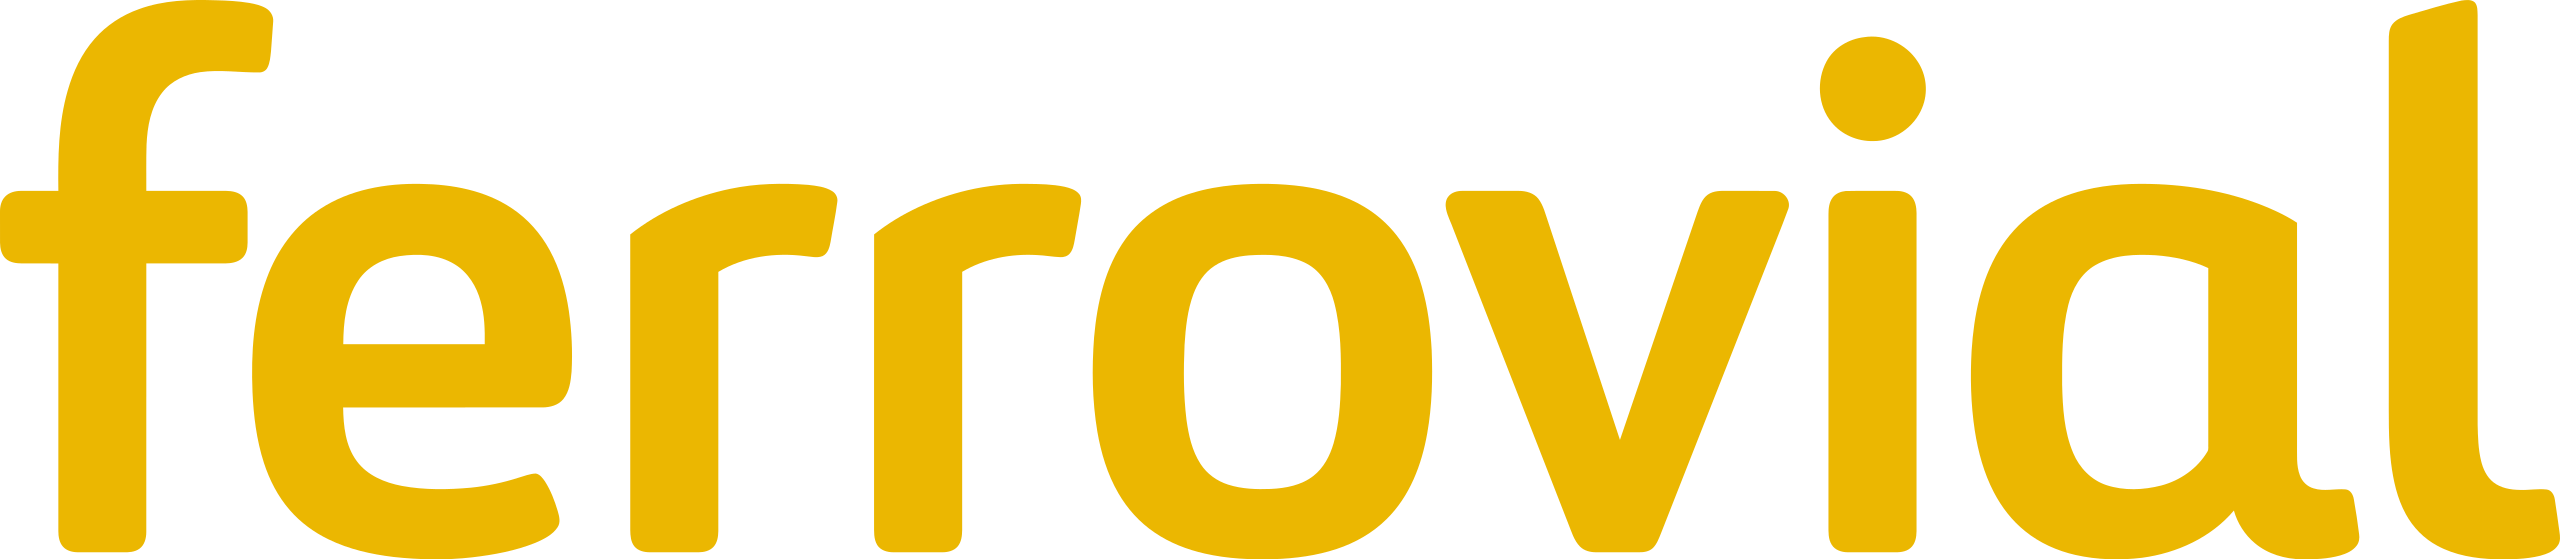 Logotipo de Ferrovial en tonos amarillos, vinculado con proyectos de rehabilitación de edificios y construcción. El logo representa la marca de la empresa, especializada en servicios de infraestructuras y construcción, frecuentemente asociada con trabajos de renovación y mantenimiento urbano.